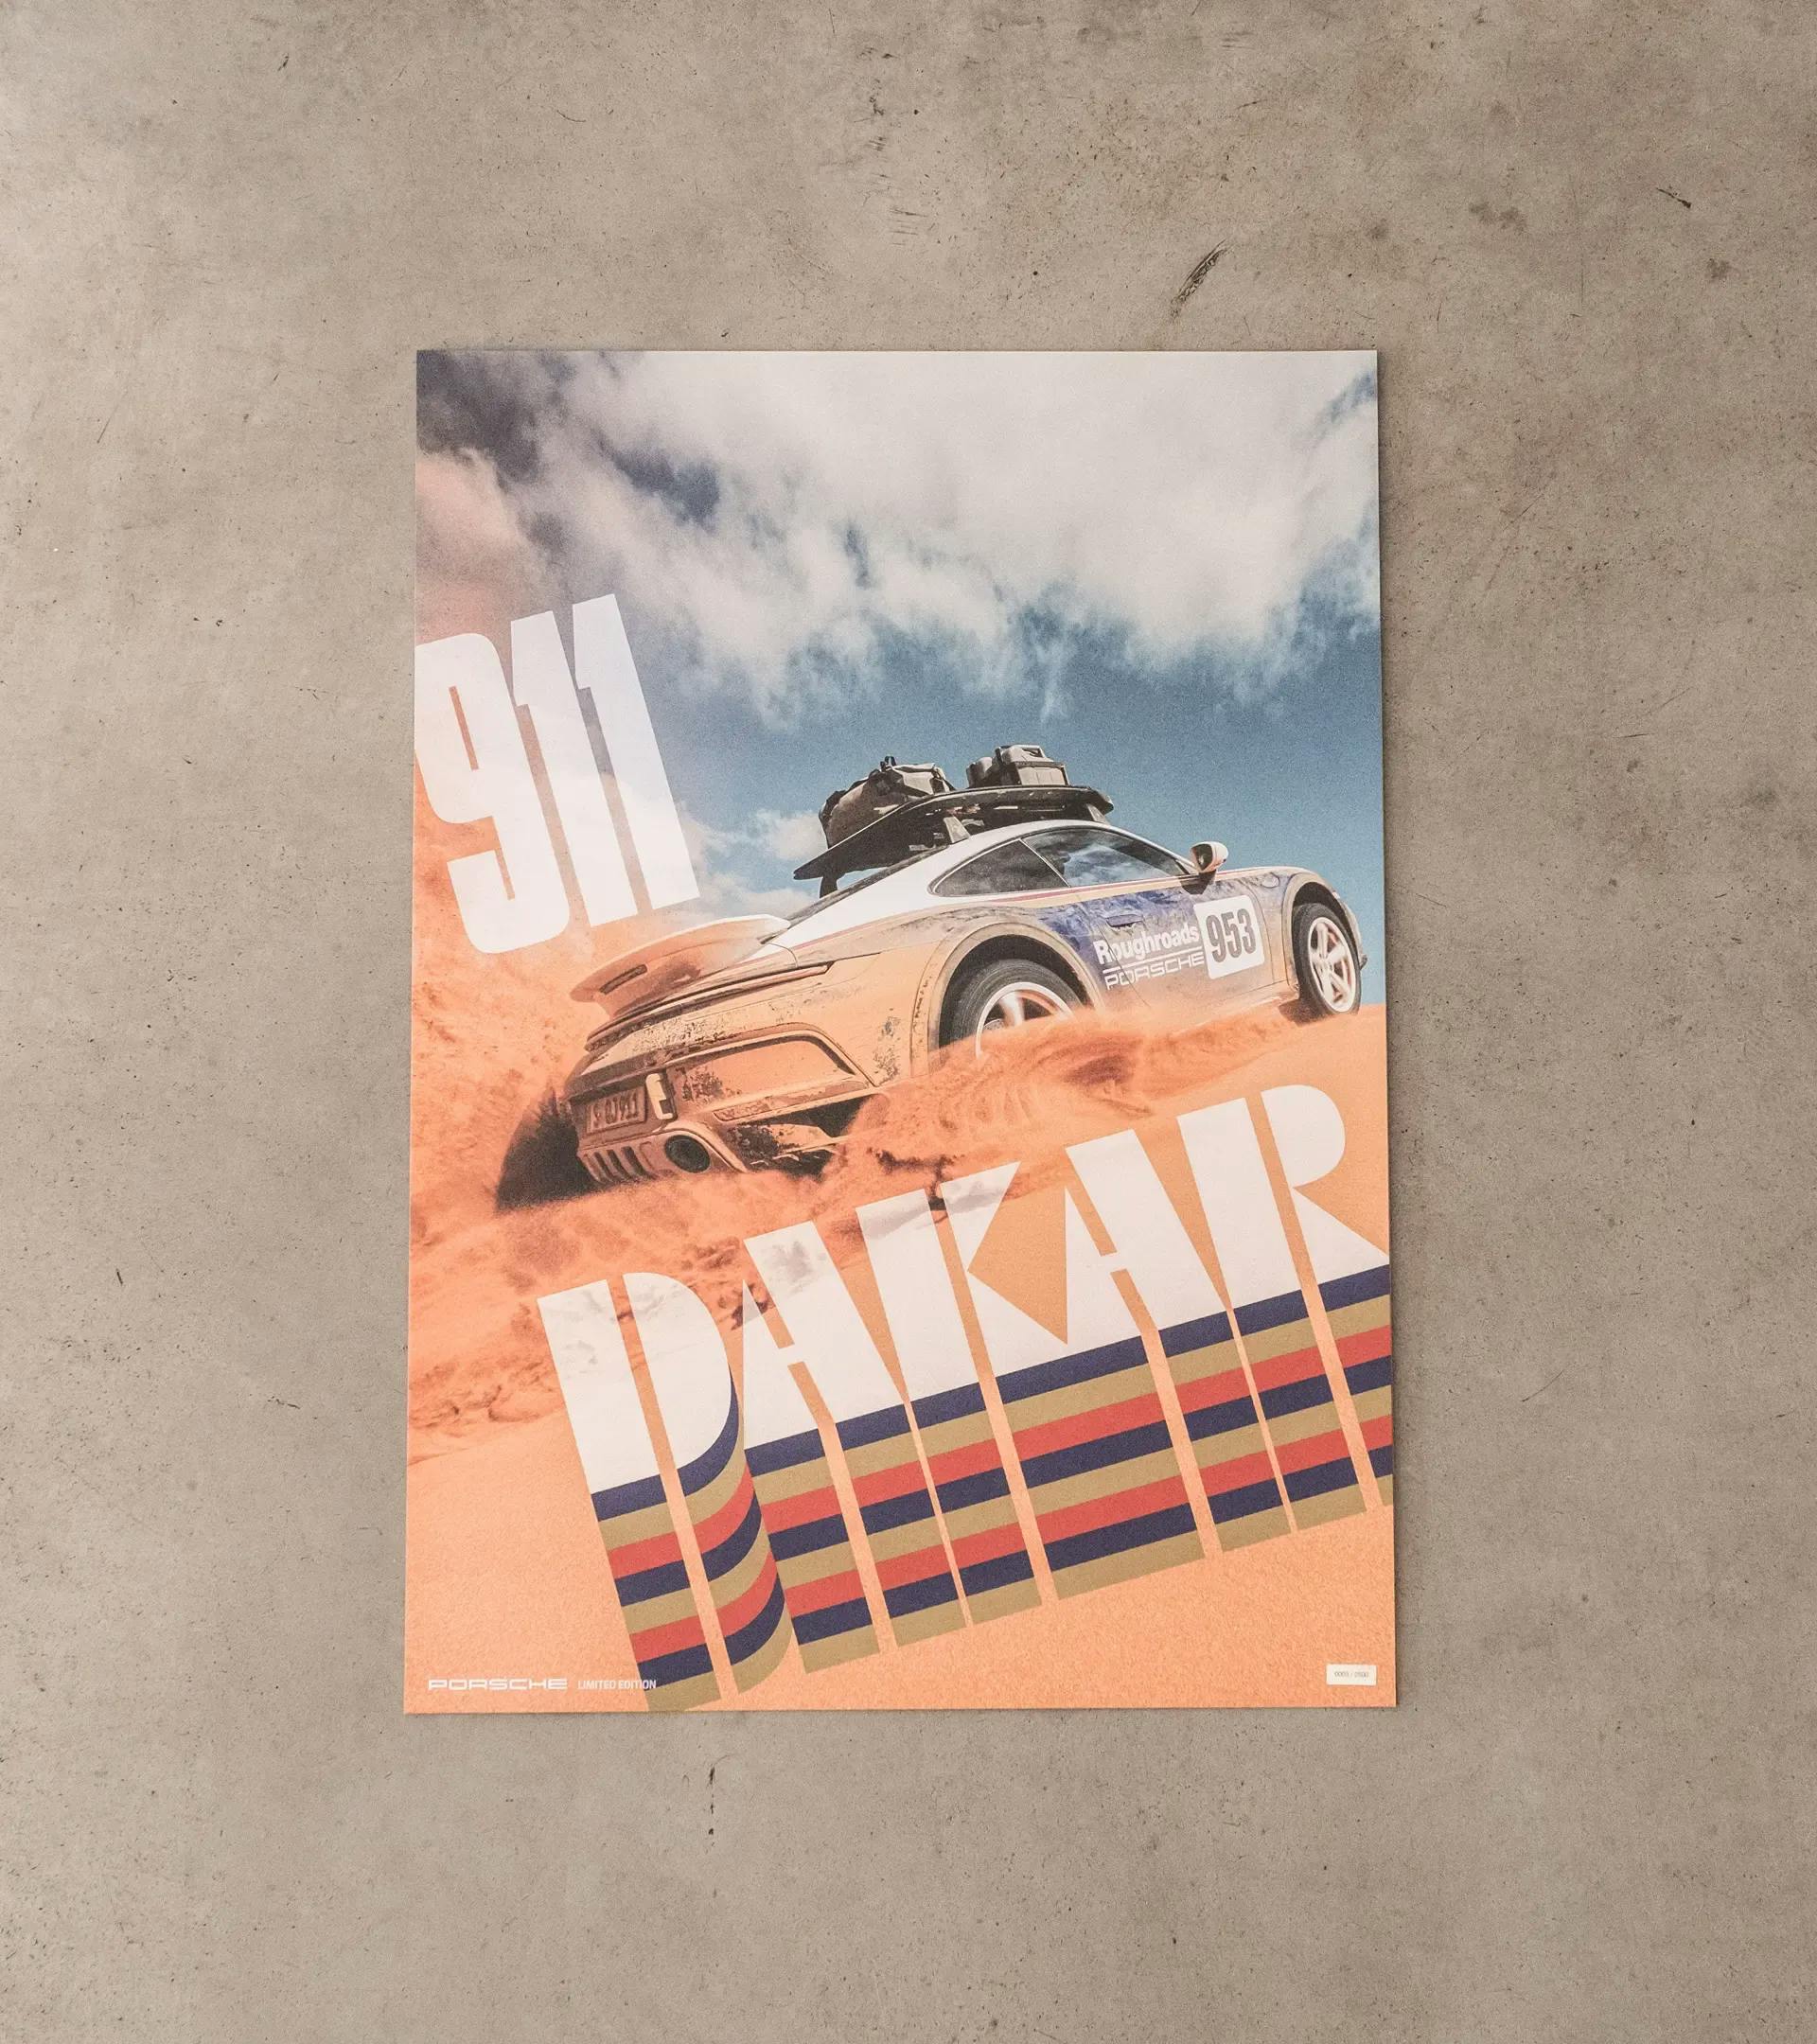 Conjunto de pósteres - 911 Dakar 2